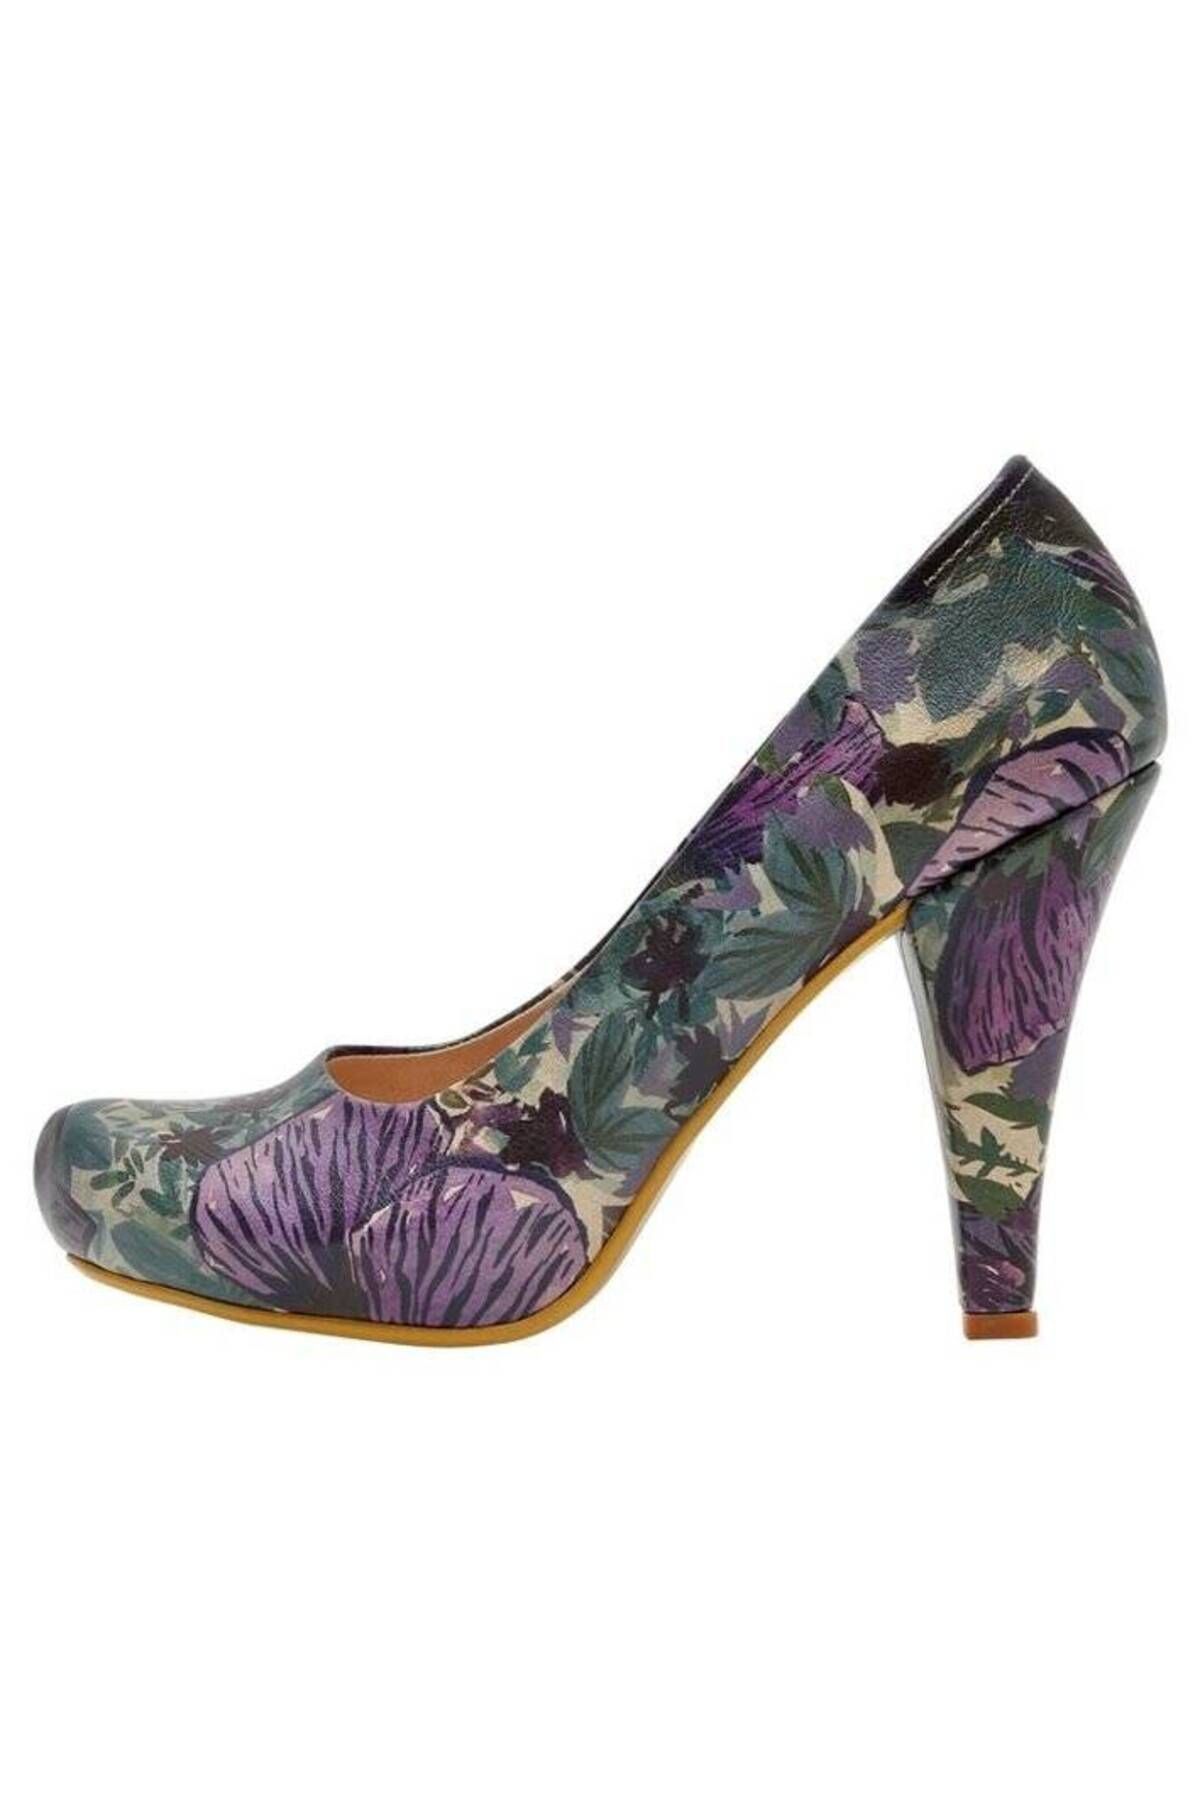 Dogo Kadın Vegan Deri Çok Renkli Topuklu Ayakkabı - Violetta Tasarım